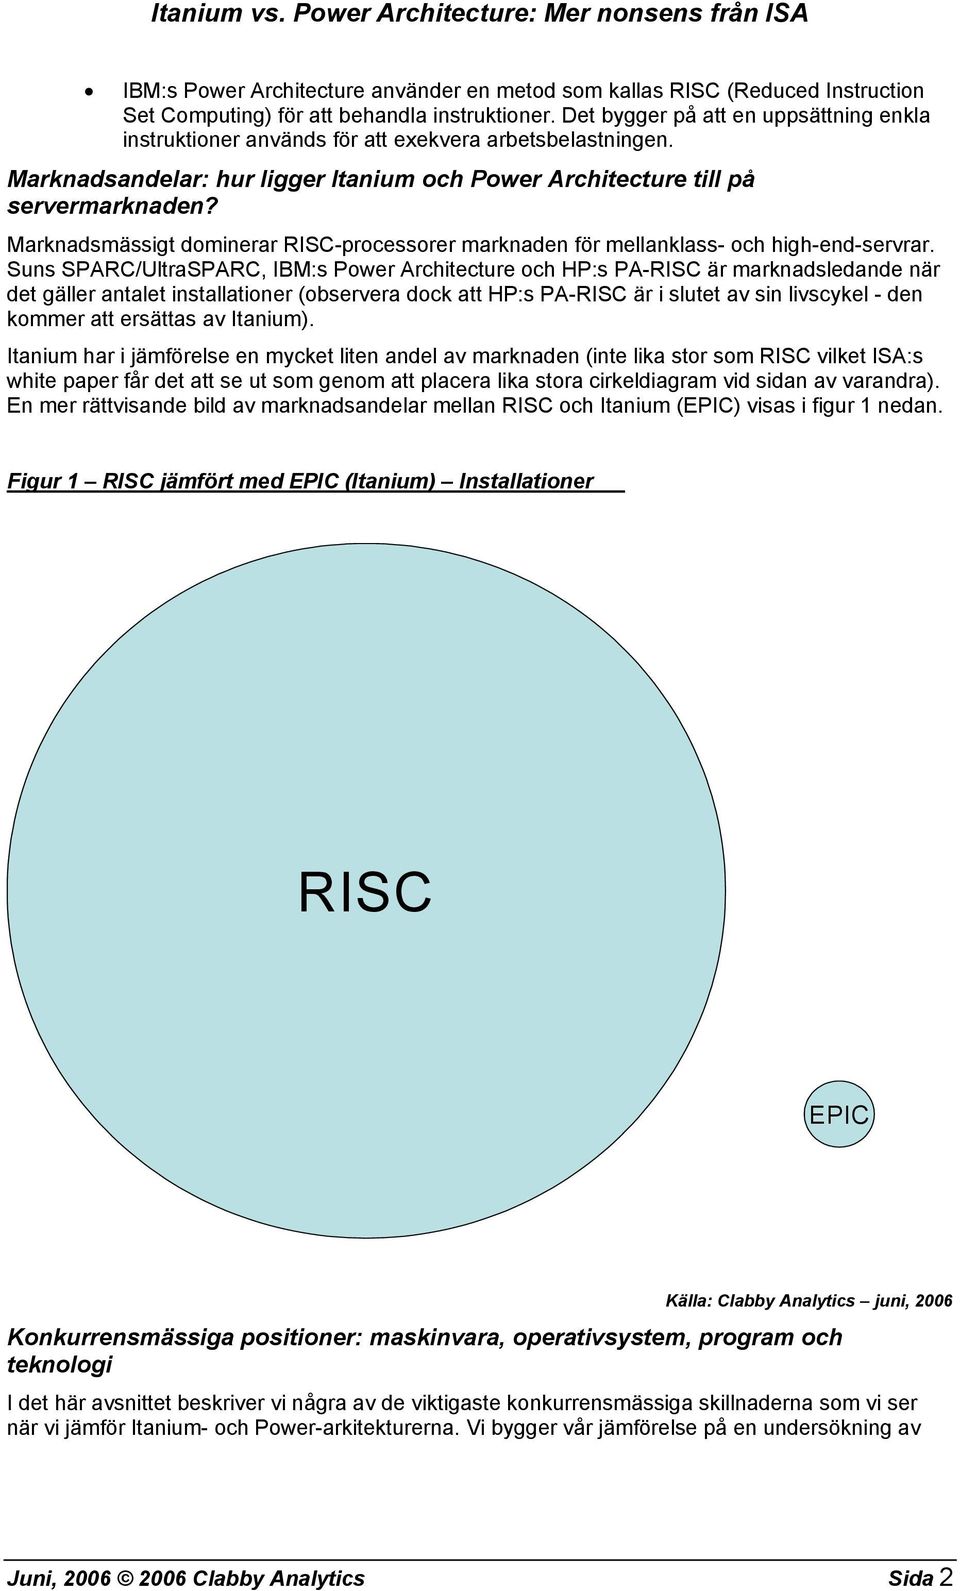 Marknadsmässigt dominerar RISC-processorer marknaden för mellanklass- och high-end-servrar.